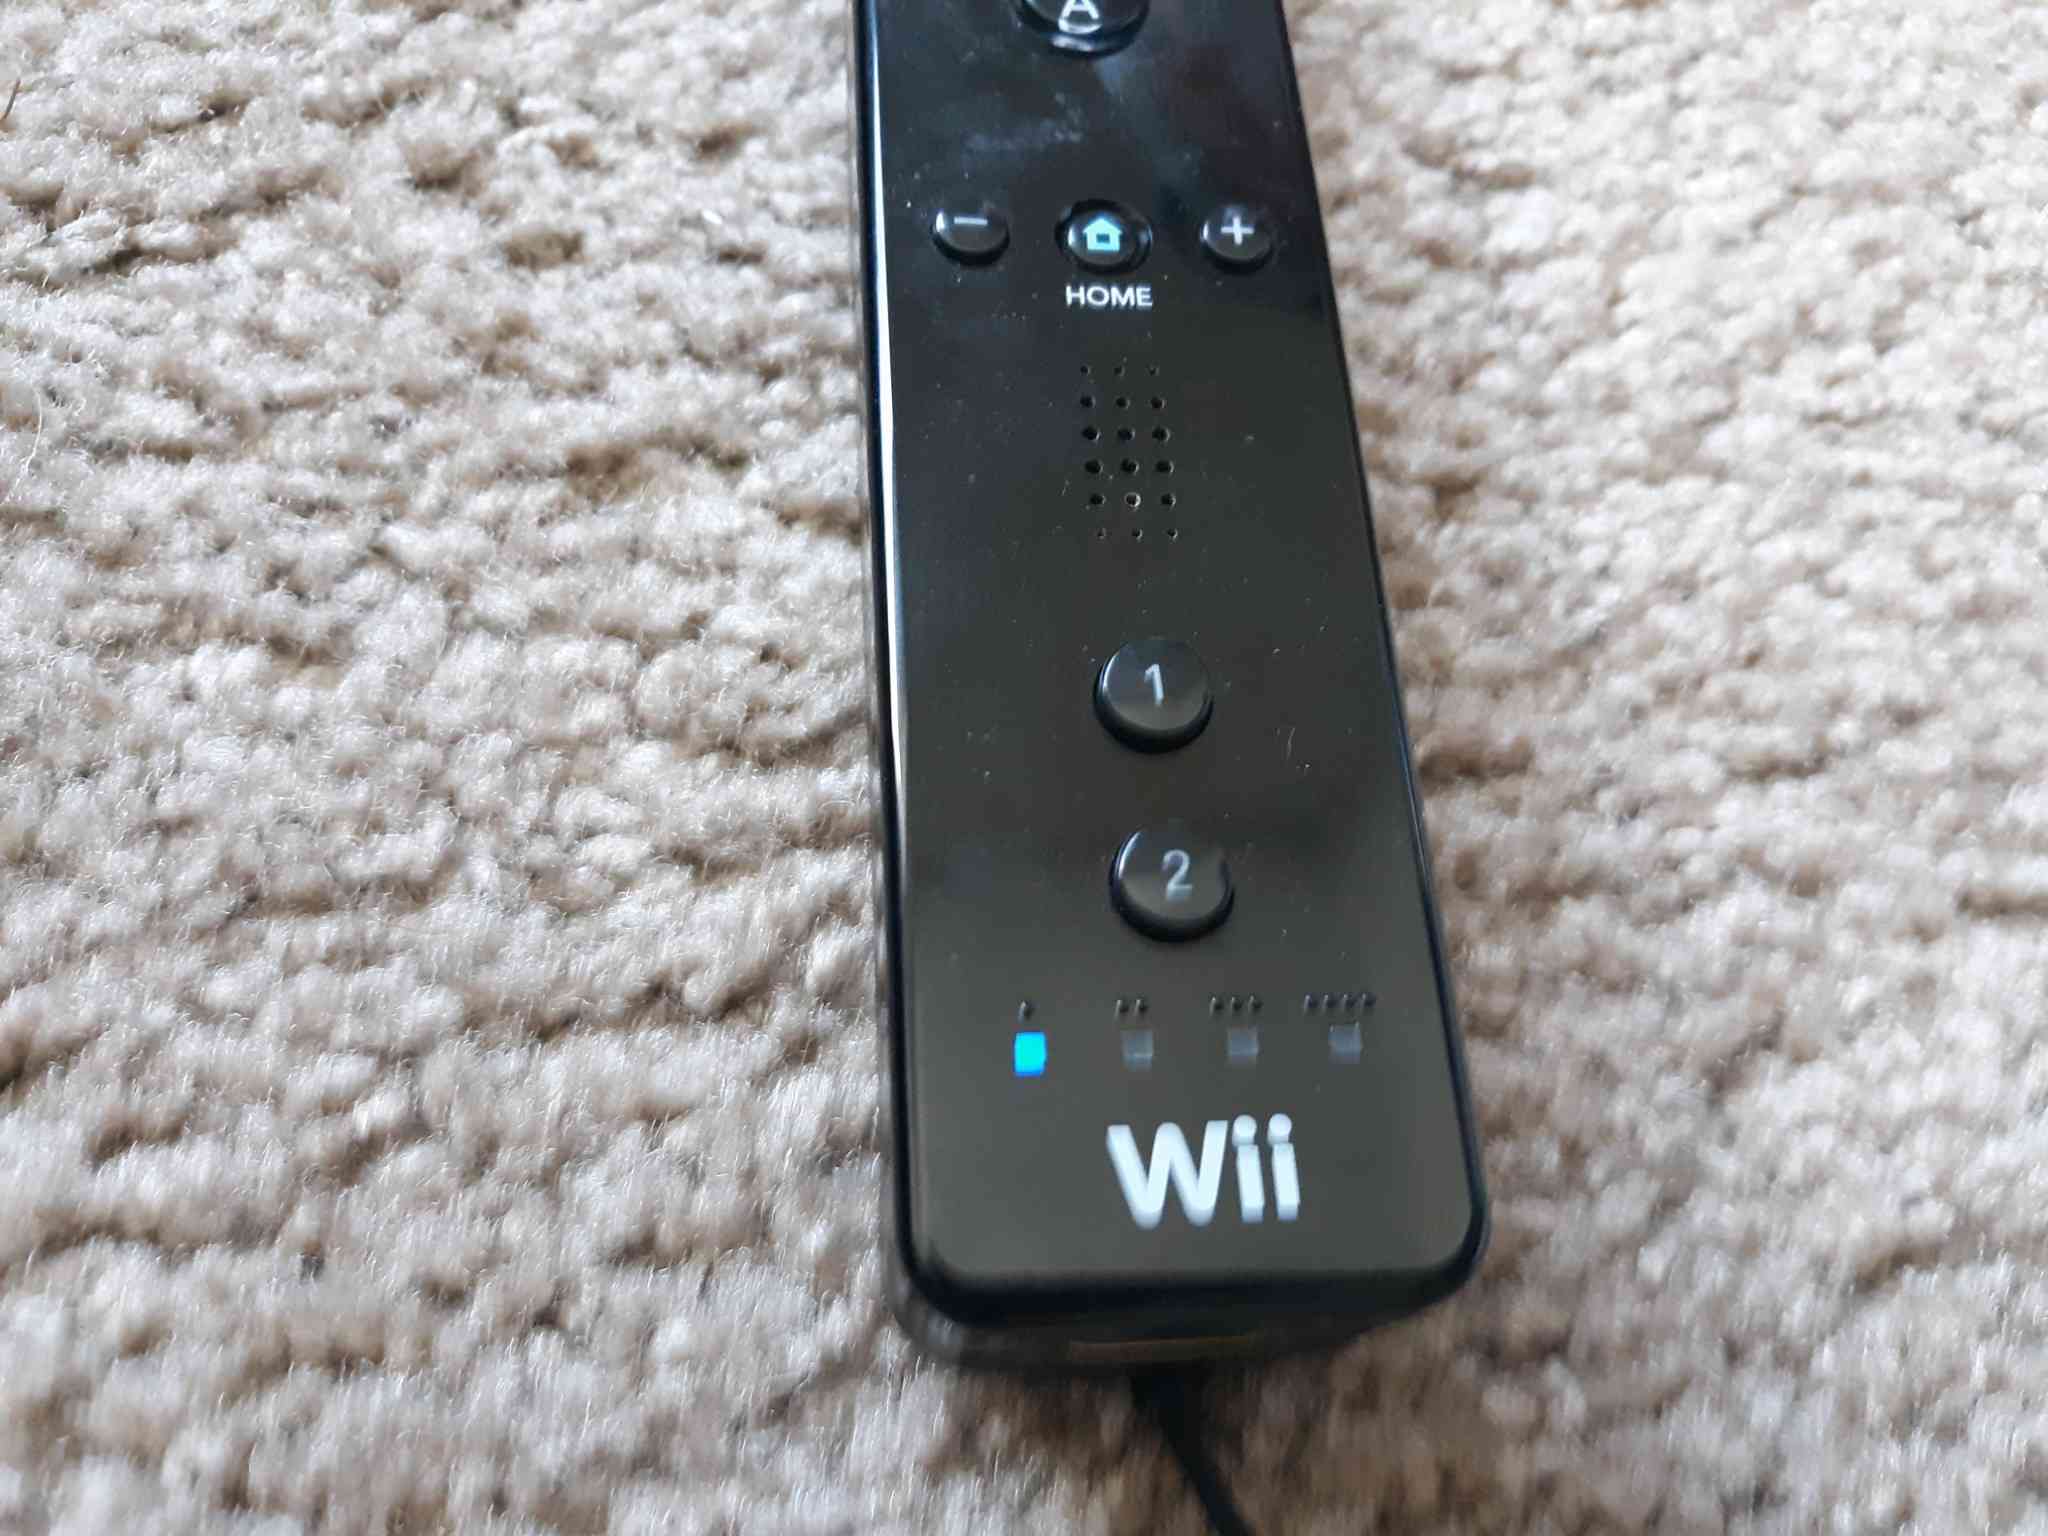 Os botões 1 e 2 no controle remoto Wii